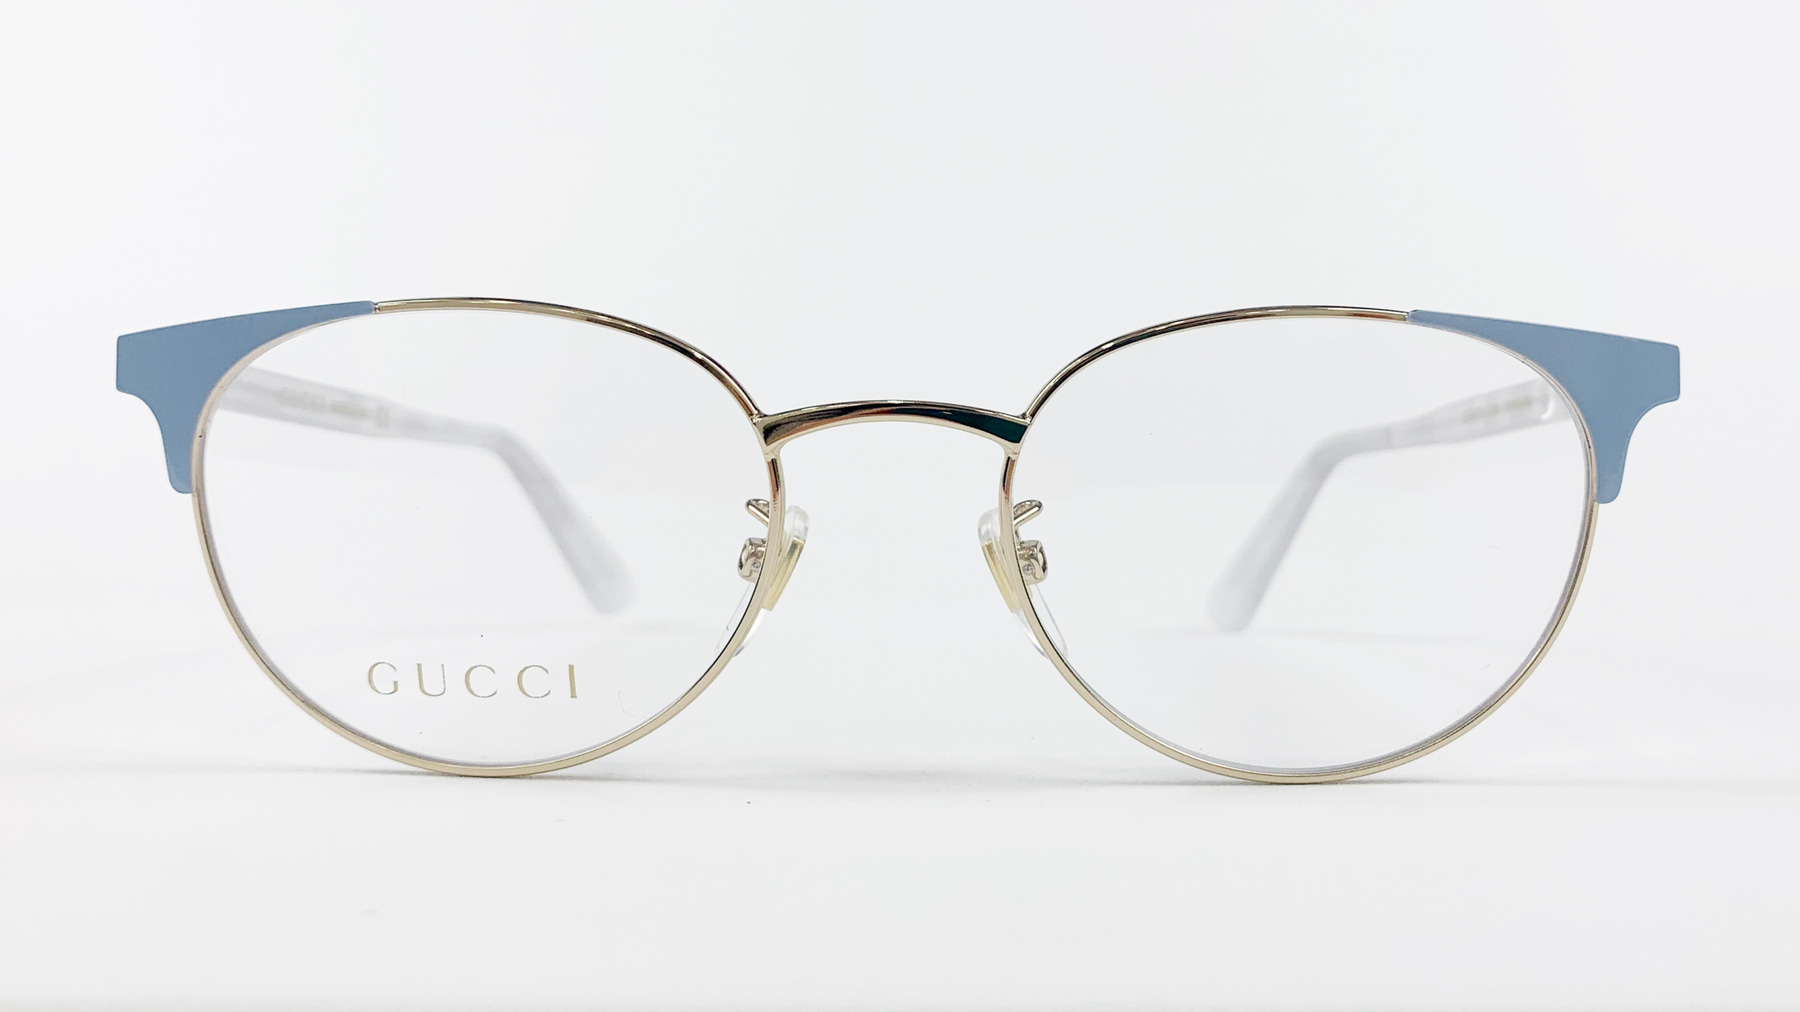 GUCCI GG0247O, Korean glasses, sunglasses, eyeglasses, glasses